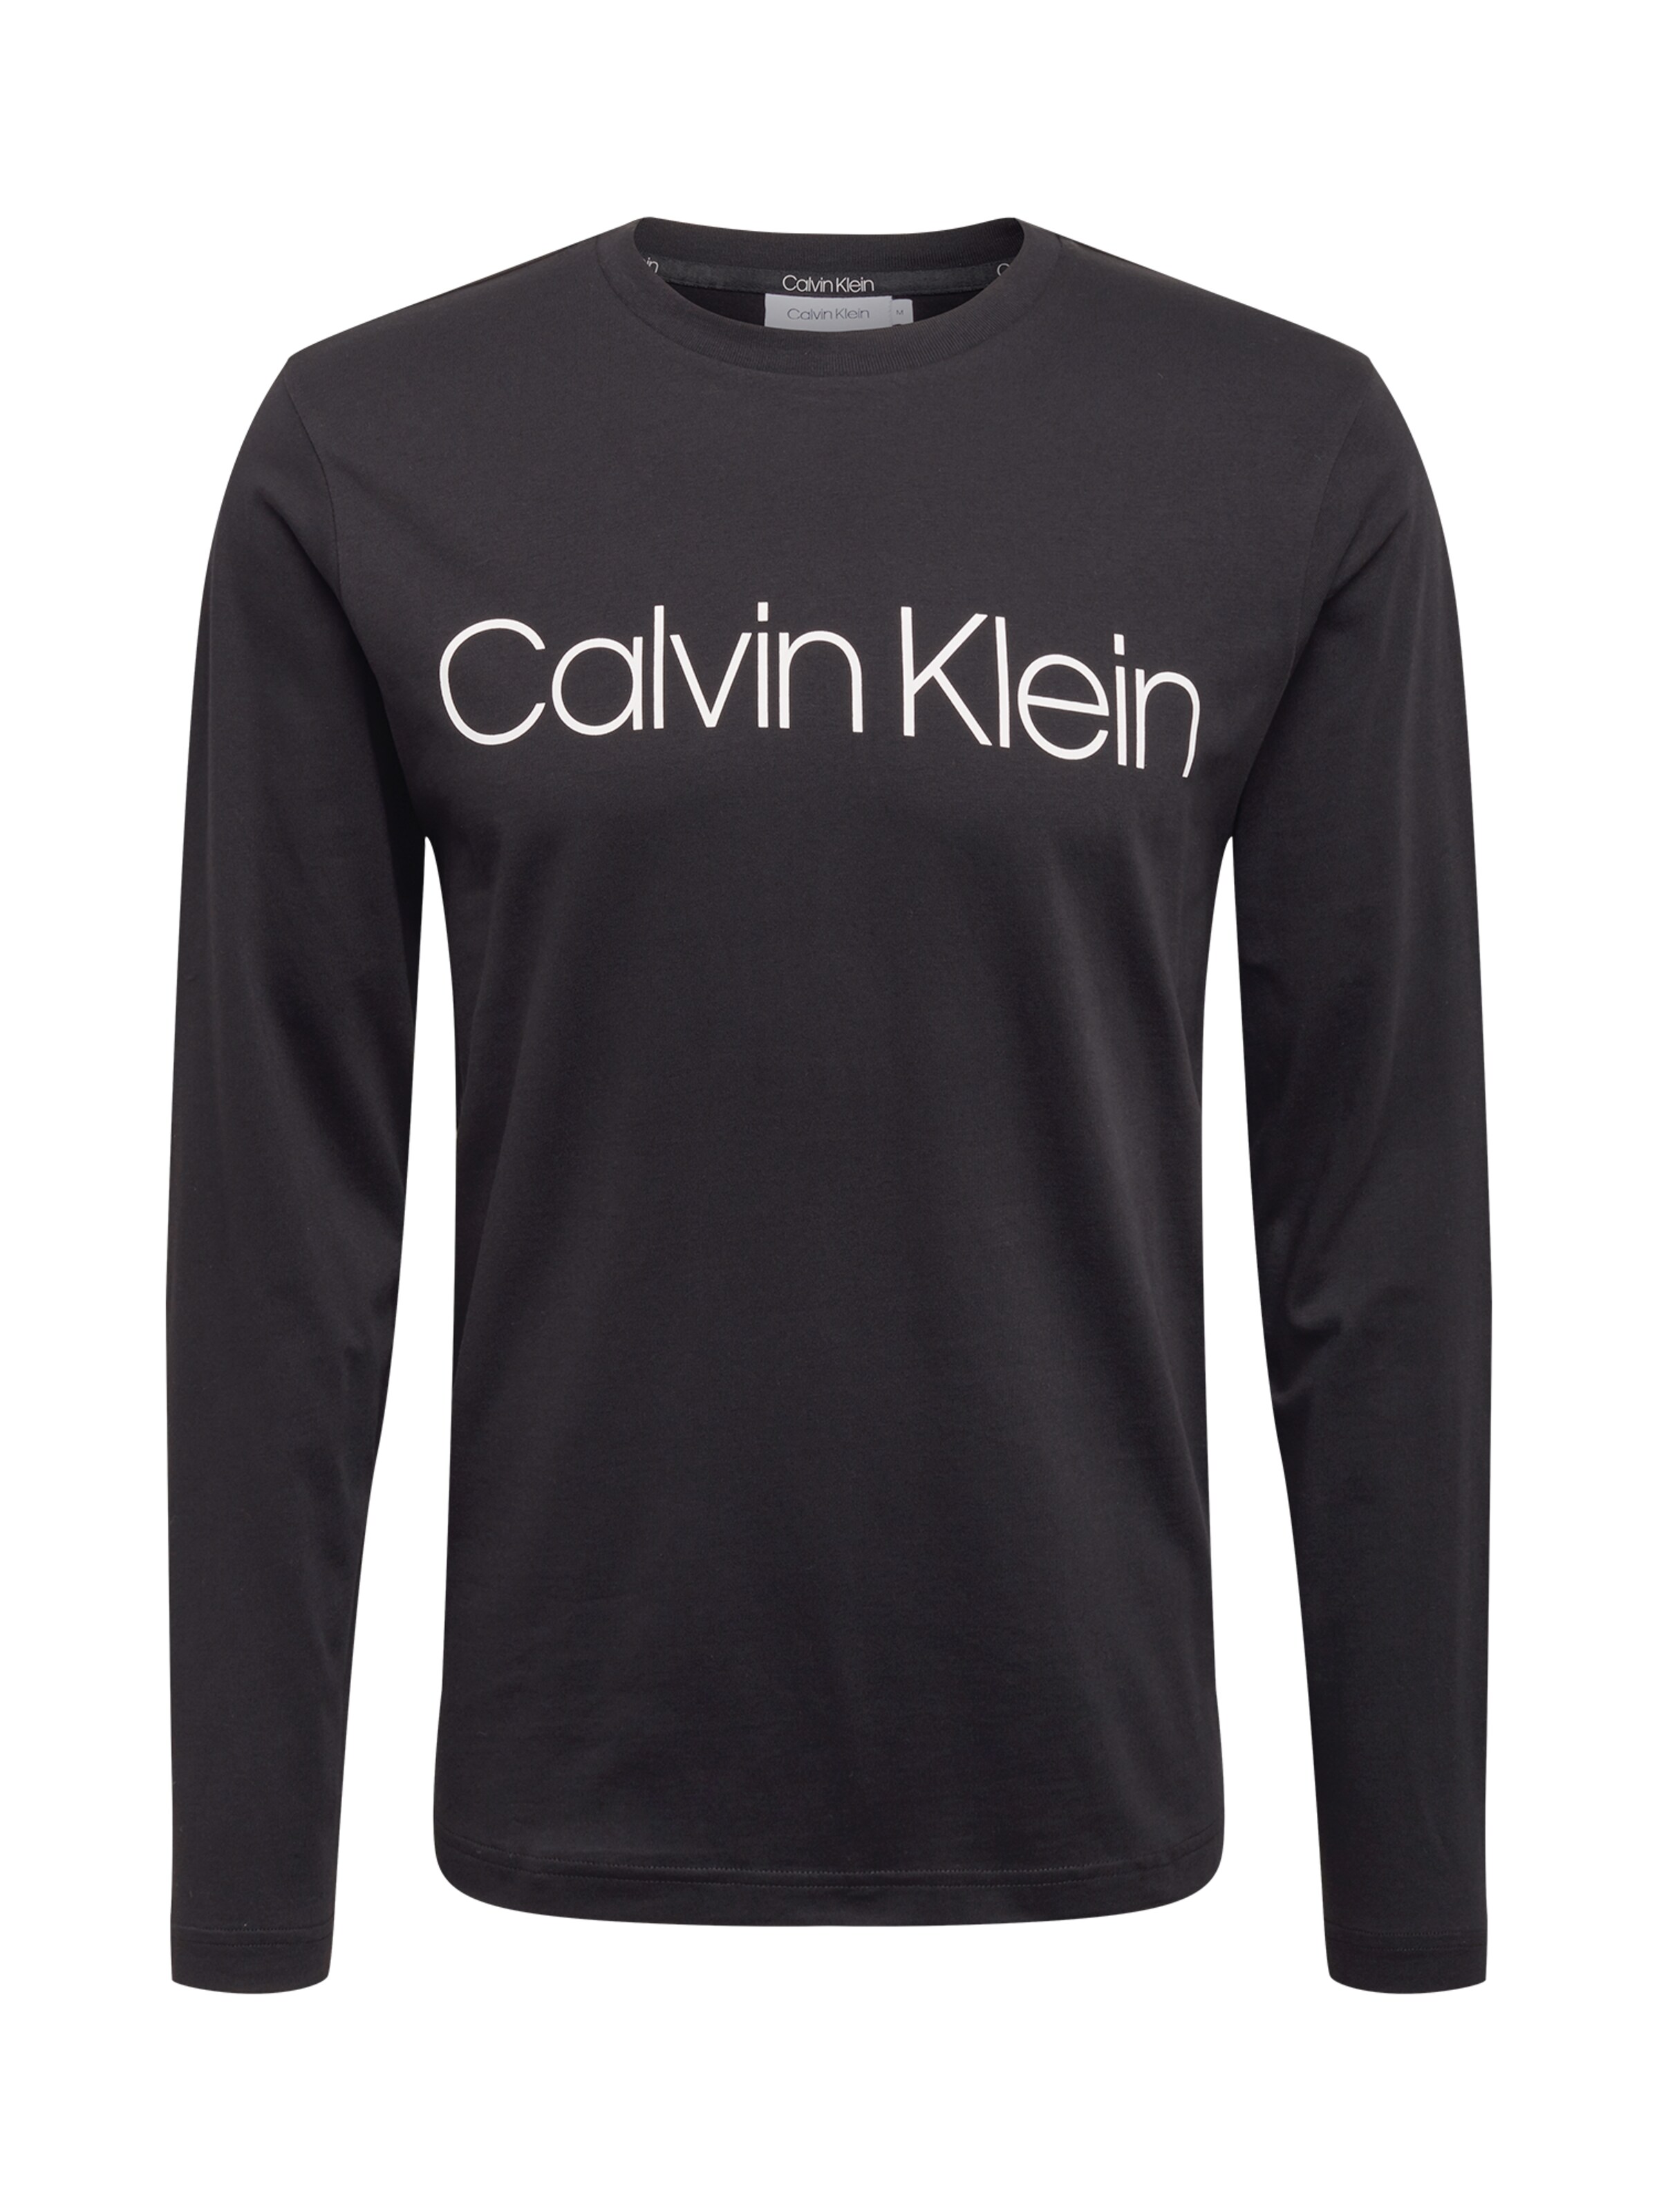 Männer Shirts Calvin Klein Shirt in Schwarz - BN35878